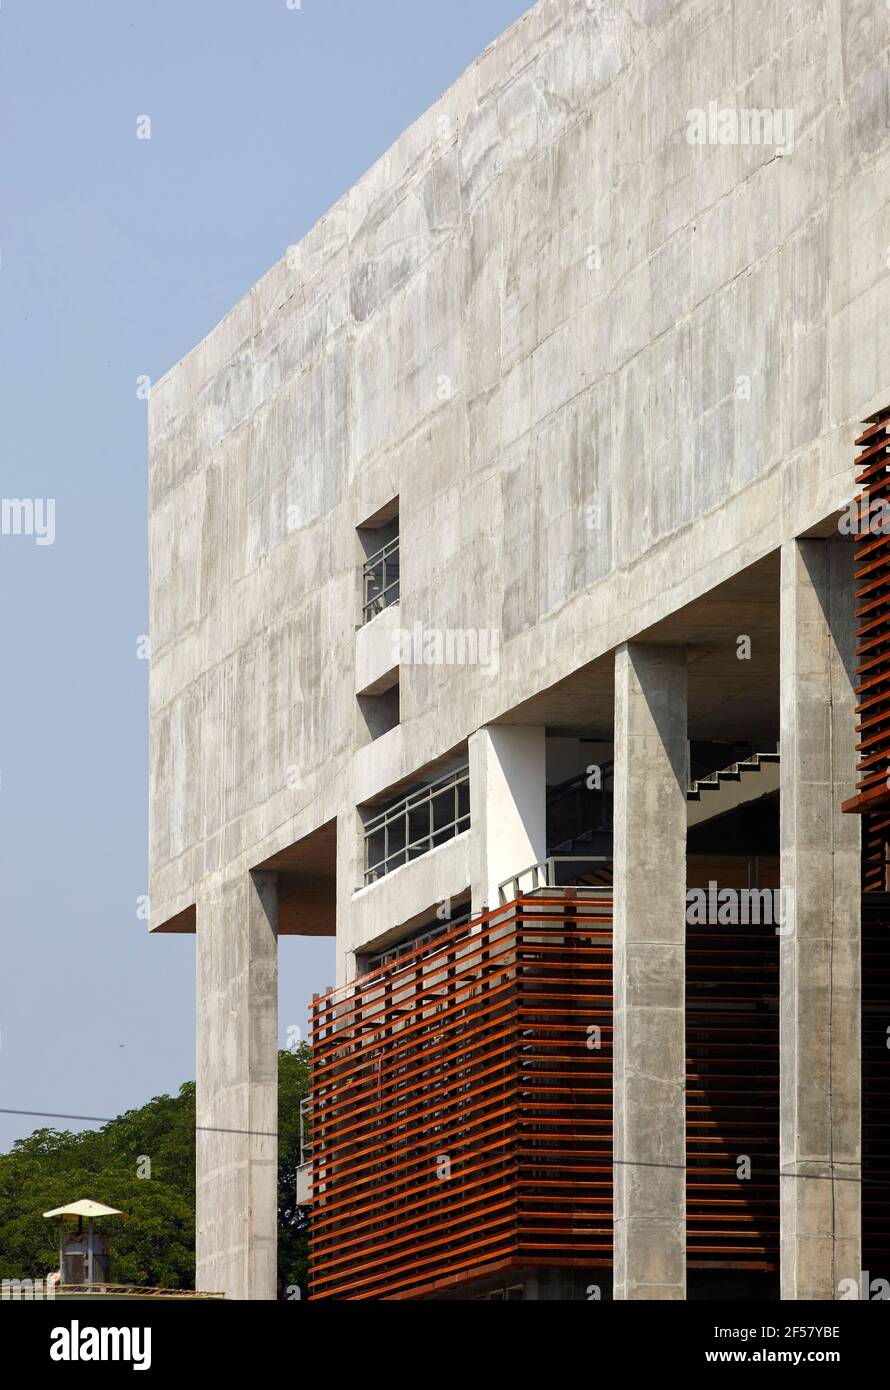 Vue détaillée de la façade extérieure tôt le matin. École de planification et d'architecture de Vijayawada, Vijayawada, Inde. Architecte: Mo-OF/ Mobile Office, 2018. Banque D'Images